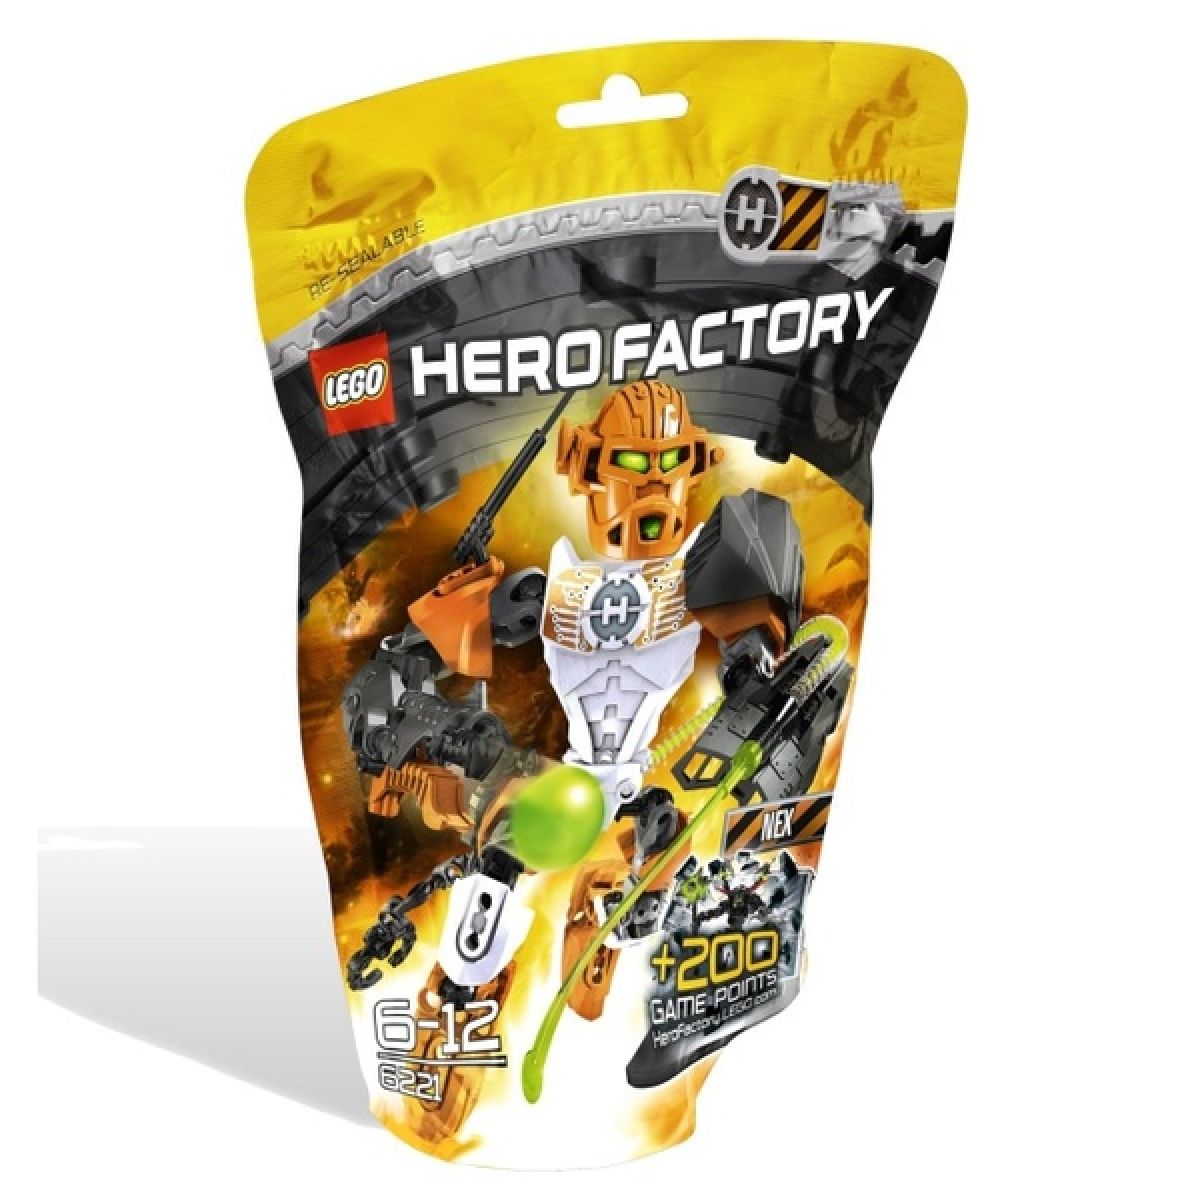 LEGO 6221 Hero Factory Nex